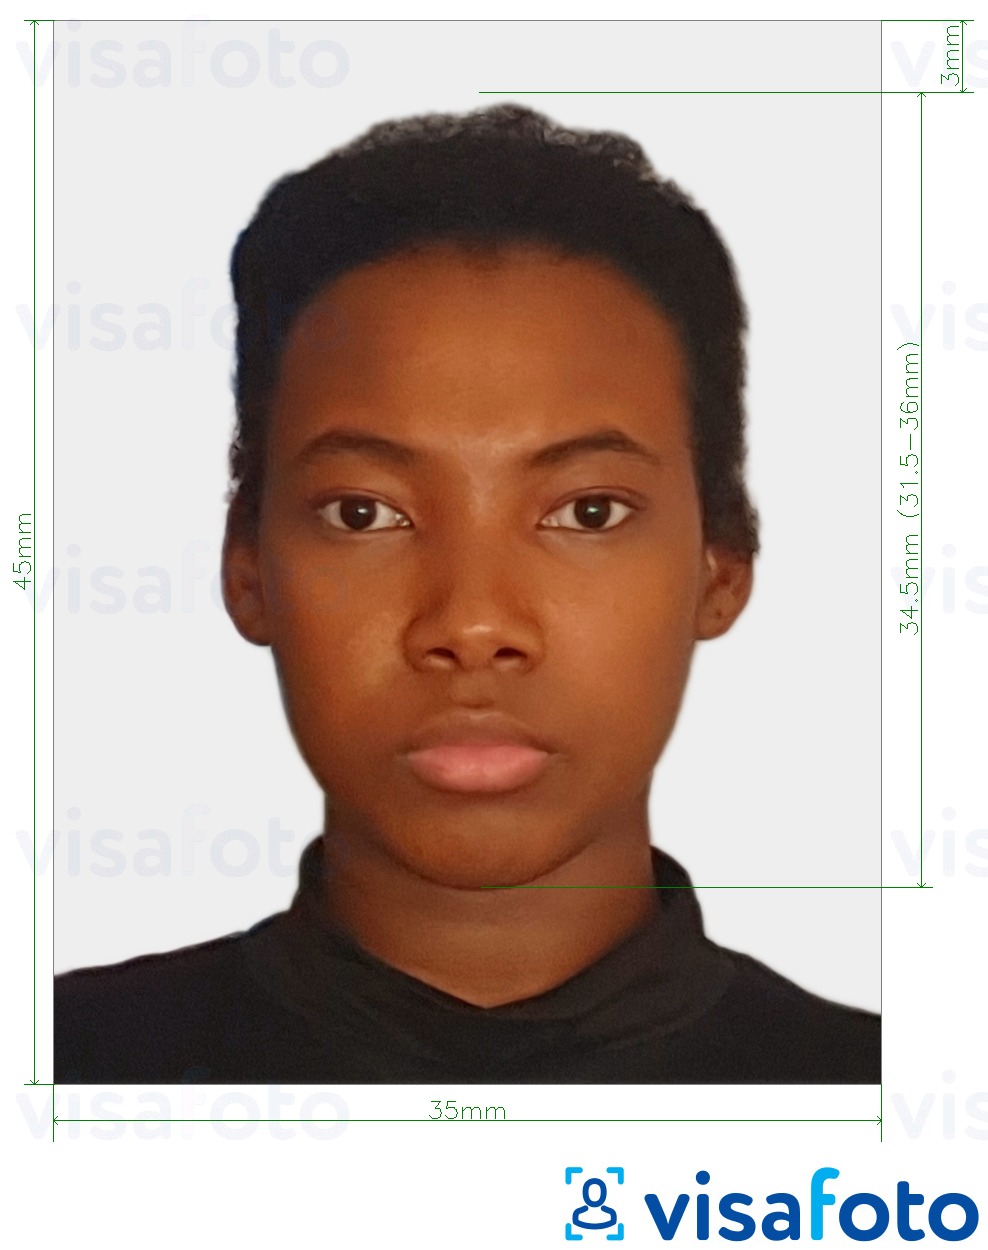 Contoh foto untuk Zambia visa foto 35x45 mm (3.5x4.5 cm) dengan spesifikasi saiz yang tepat.